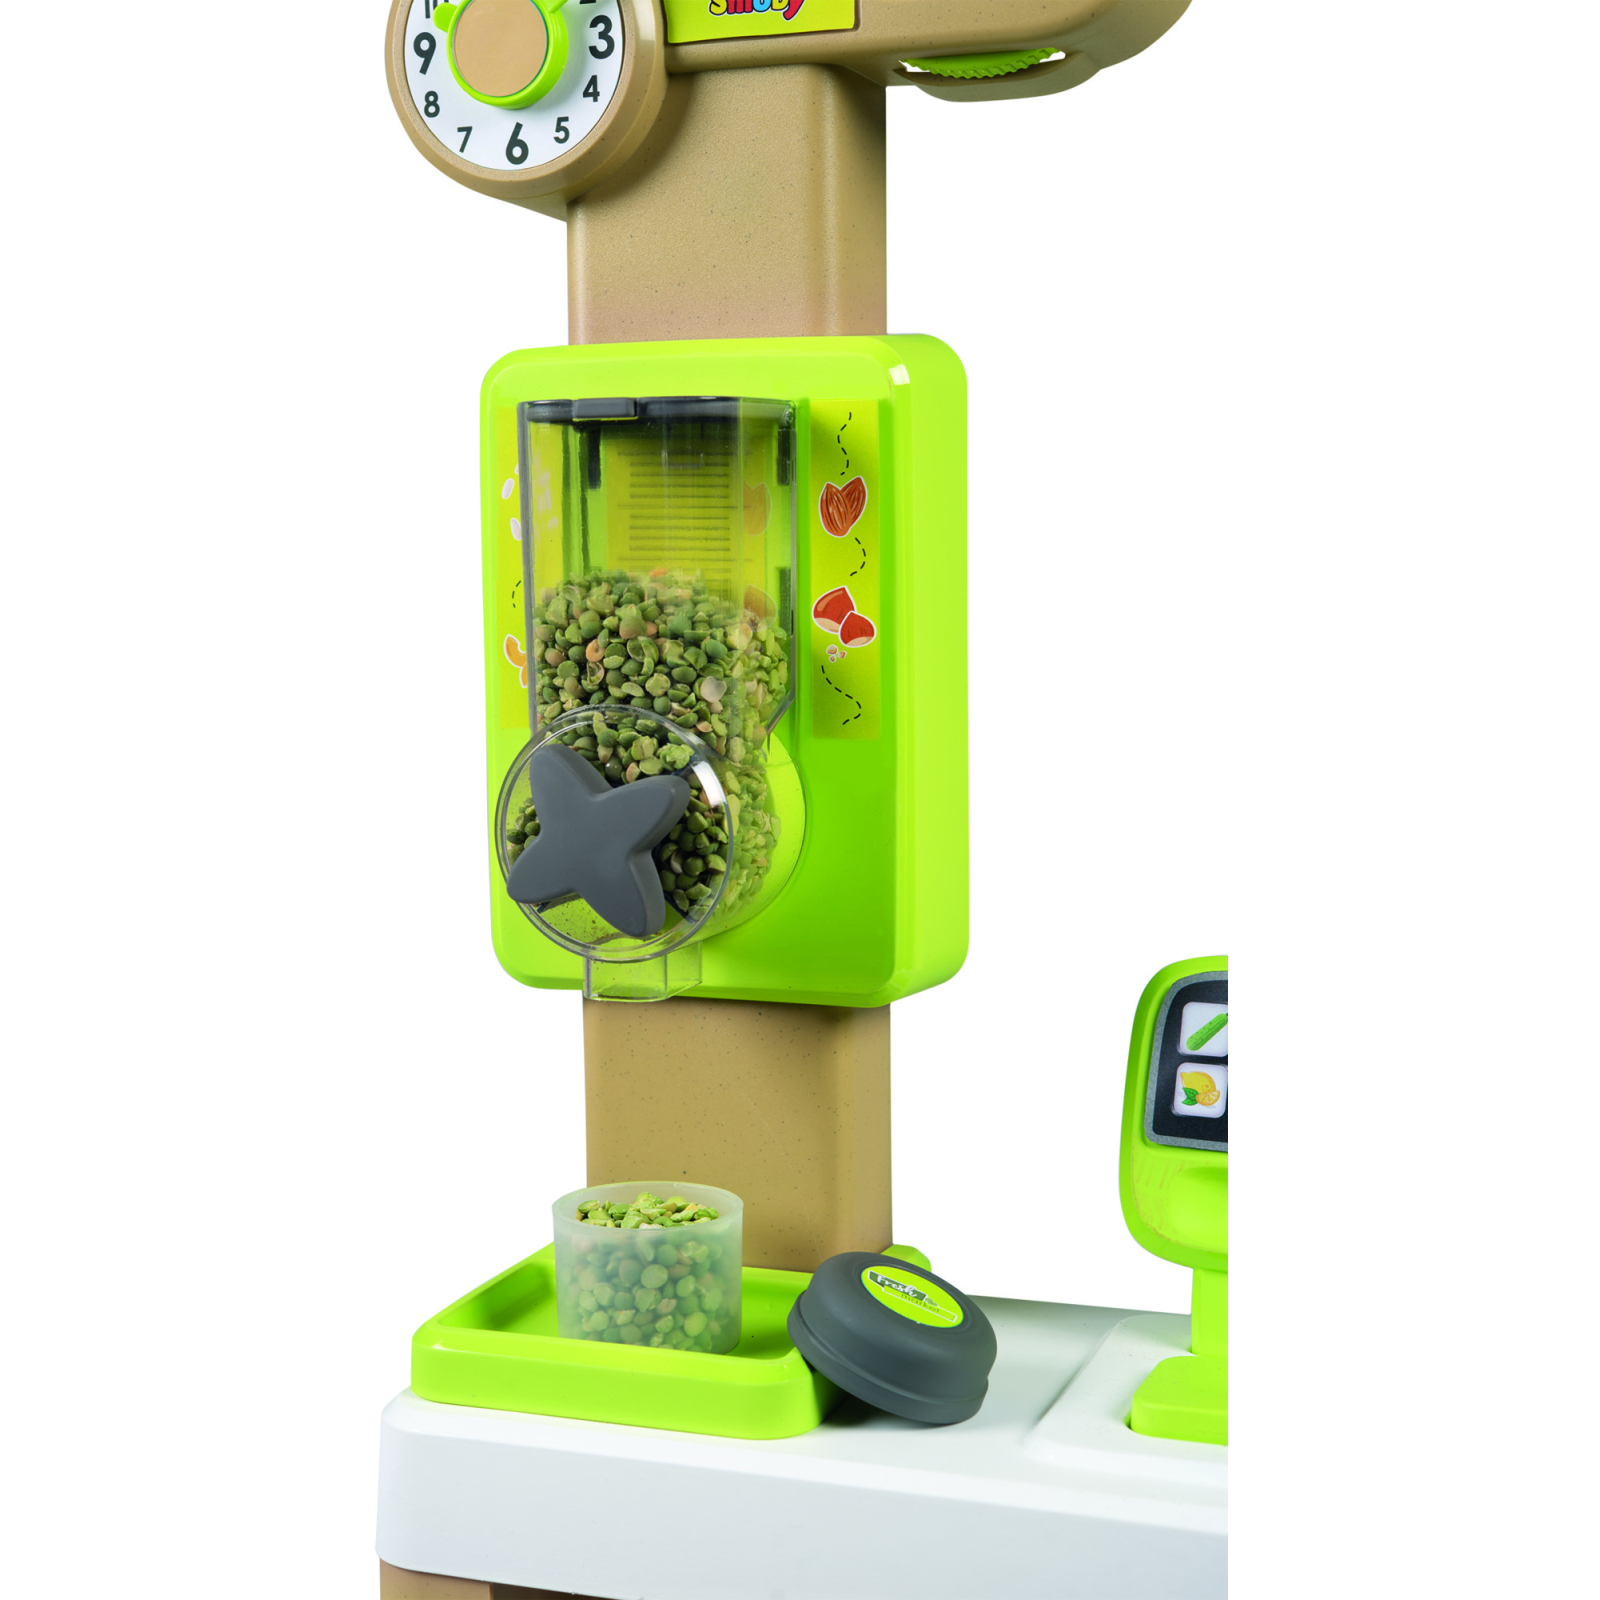 Игровой набор Smoby Интерактивный супермаркет Фреш с корзиной и сканером со световыми и звуковыми эффектами (350233) изображение 9